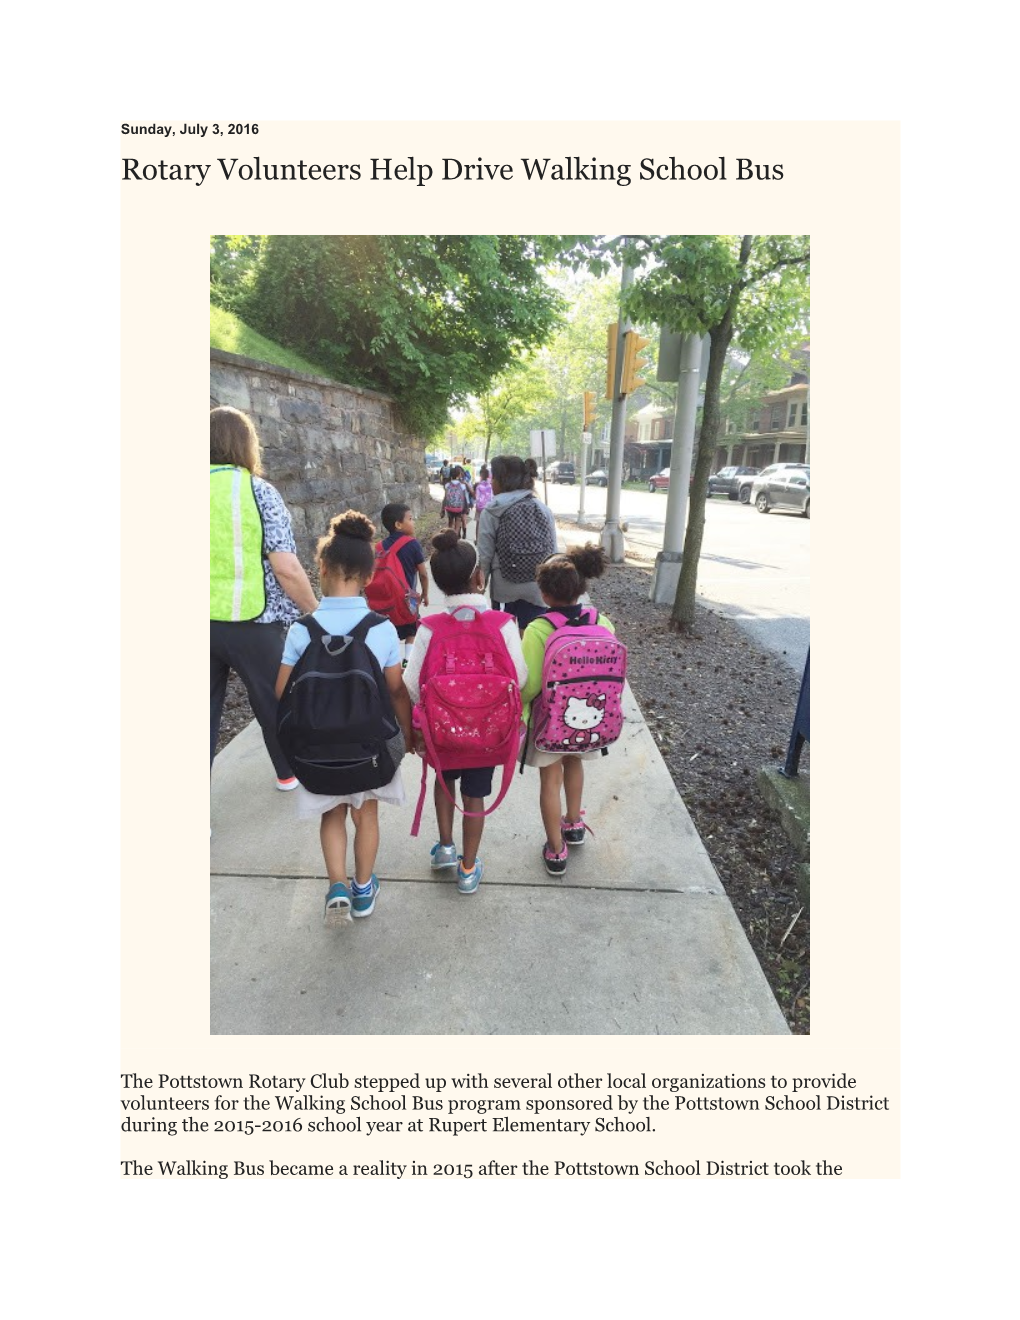 Rotary Volunteers Help Drive Walking School Bus